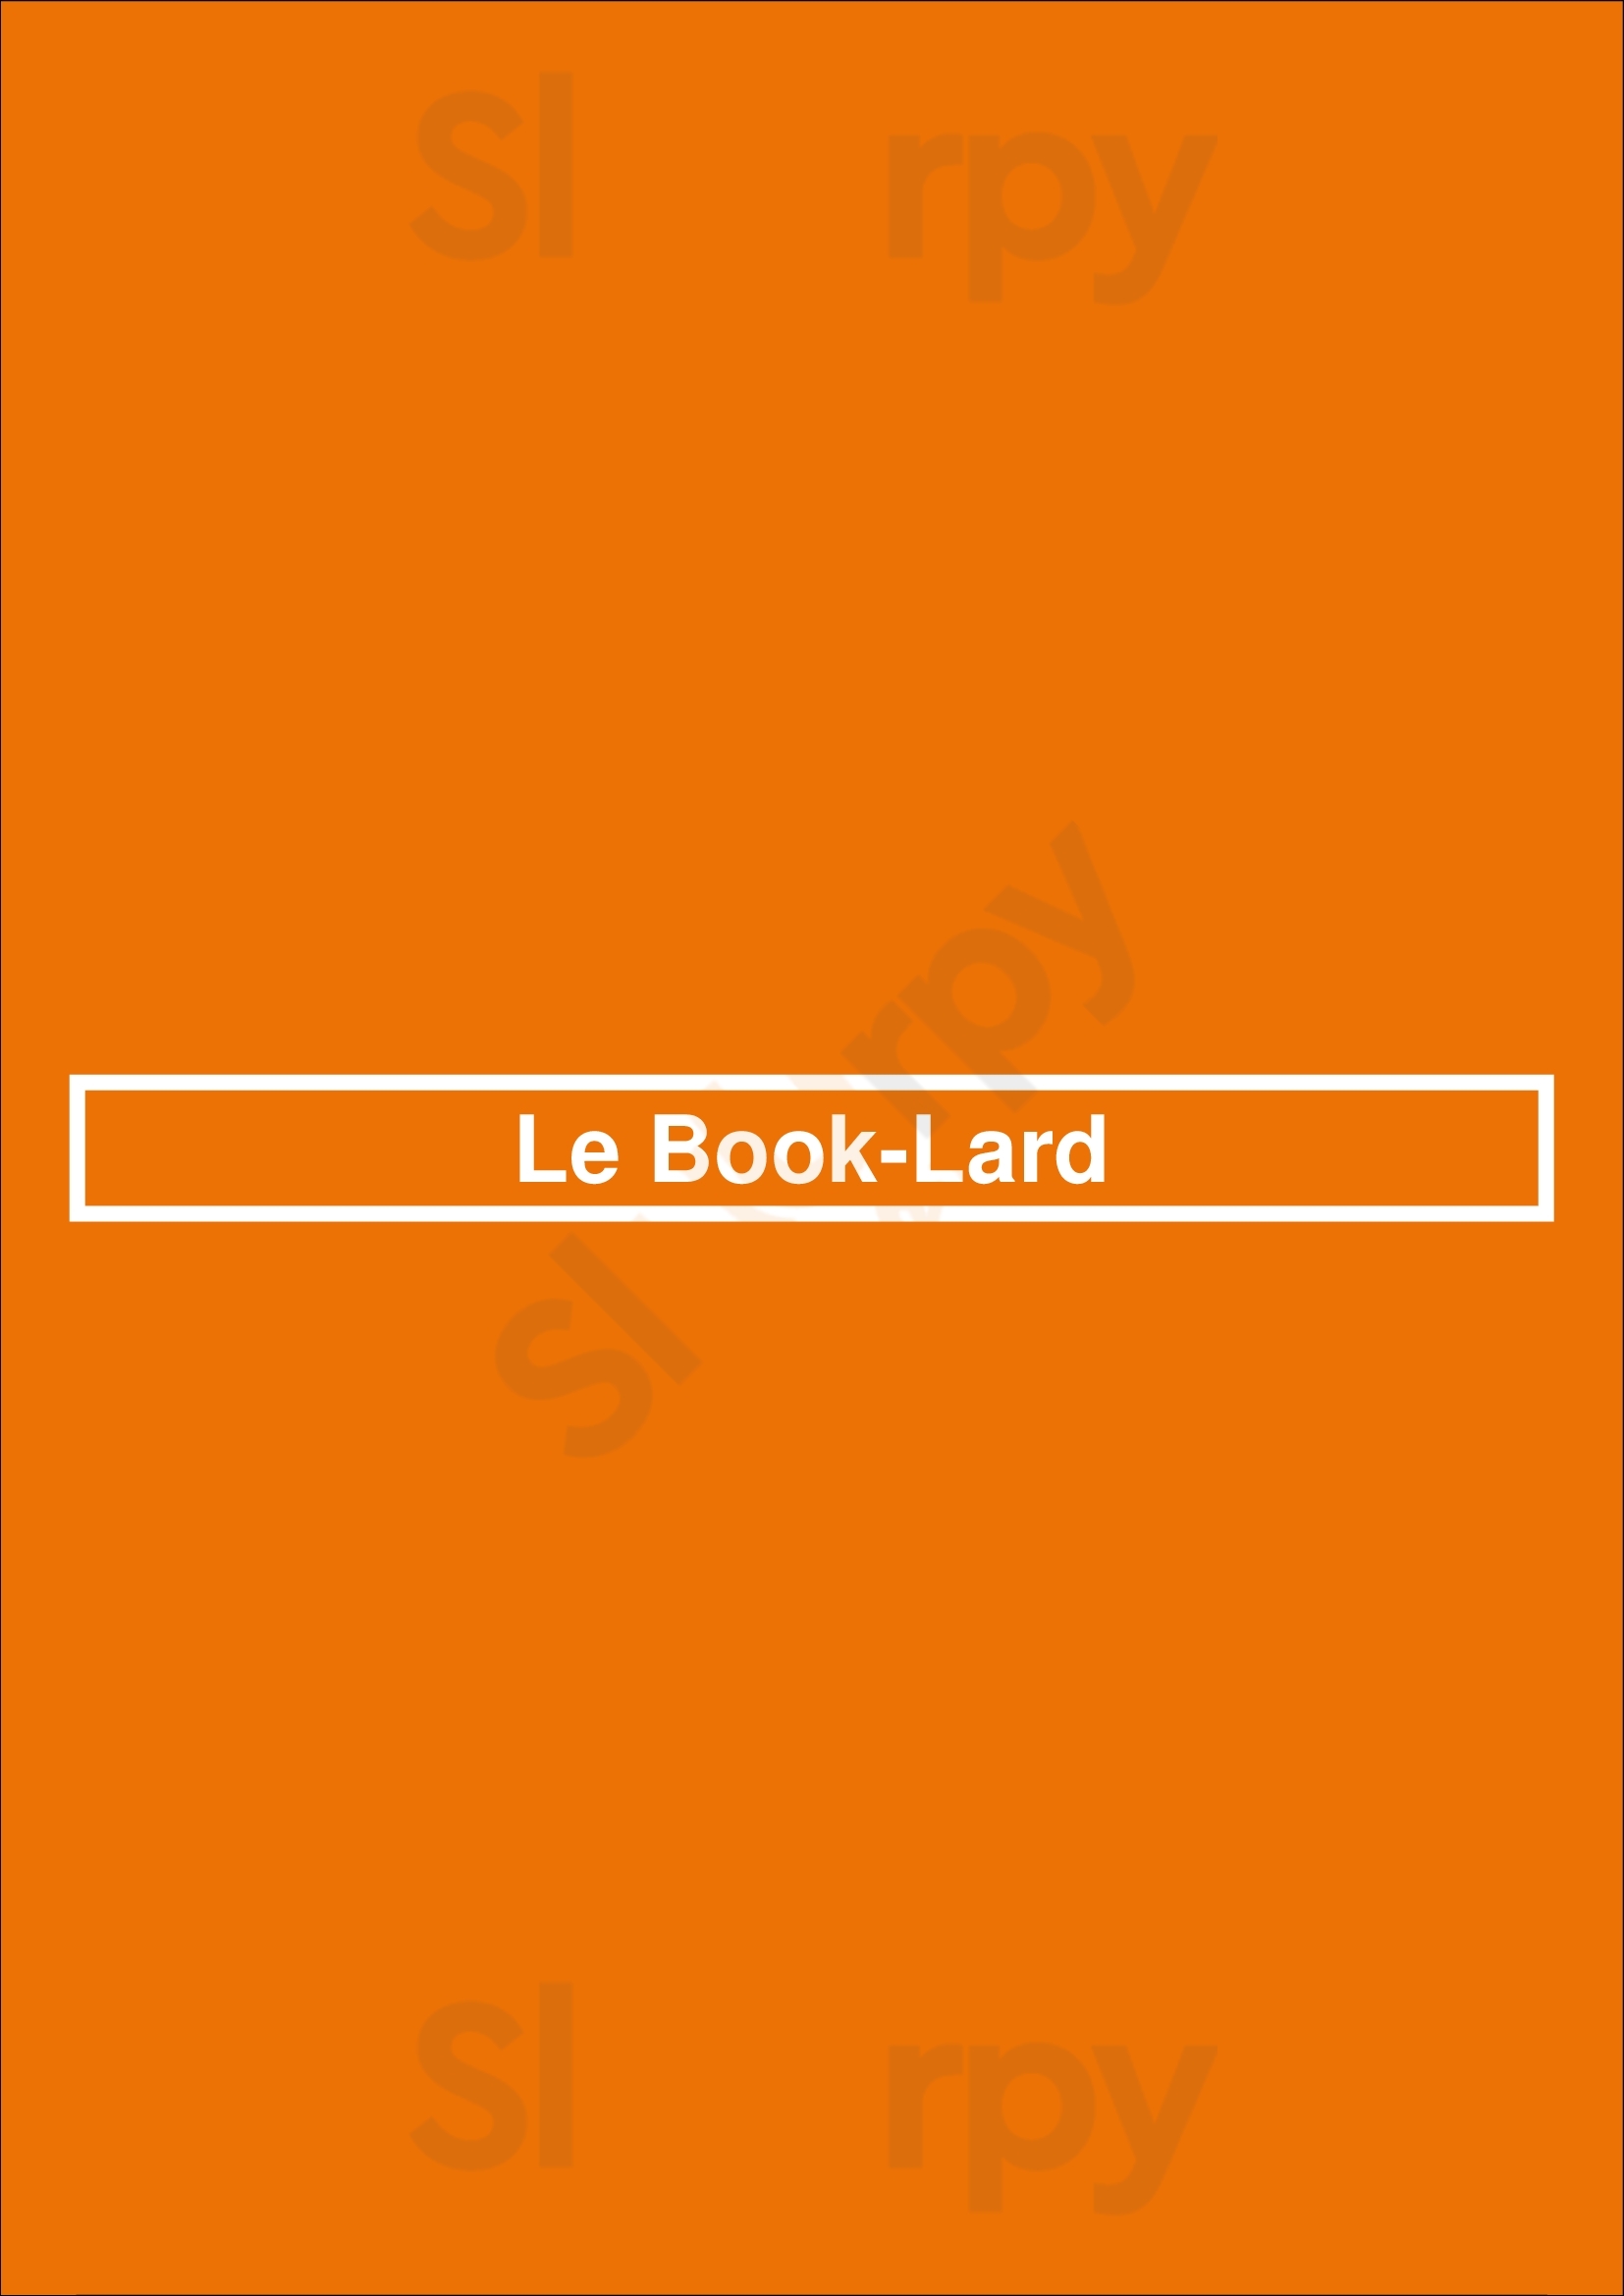 Le Book-lard Lyon Menu - 1